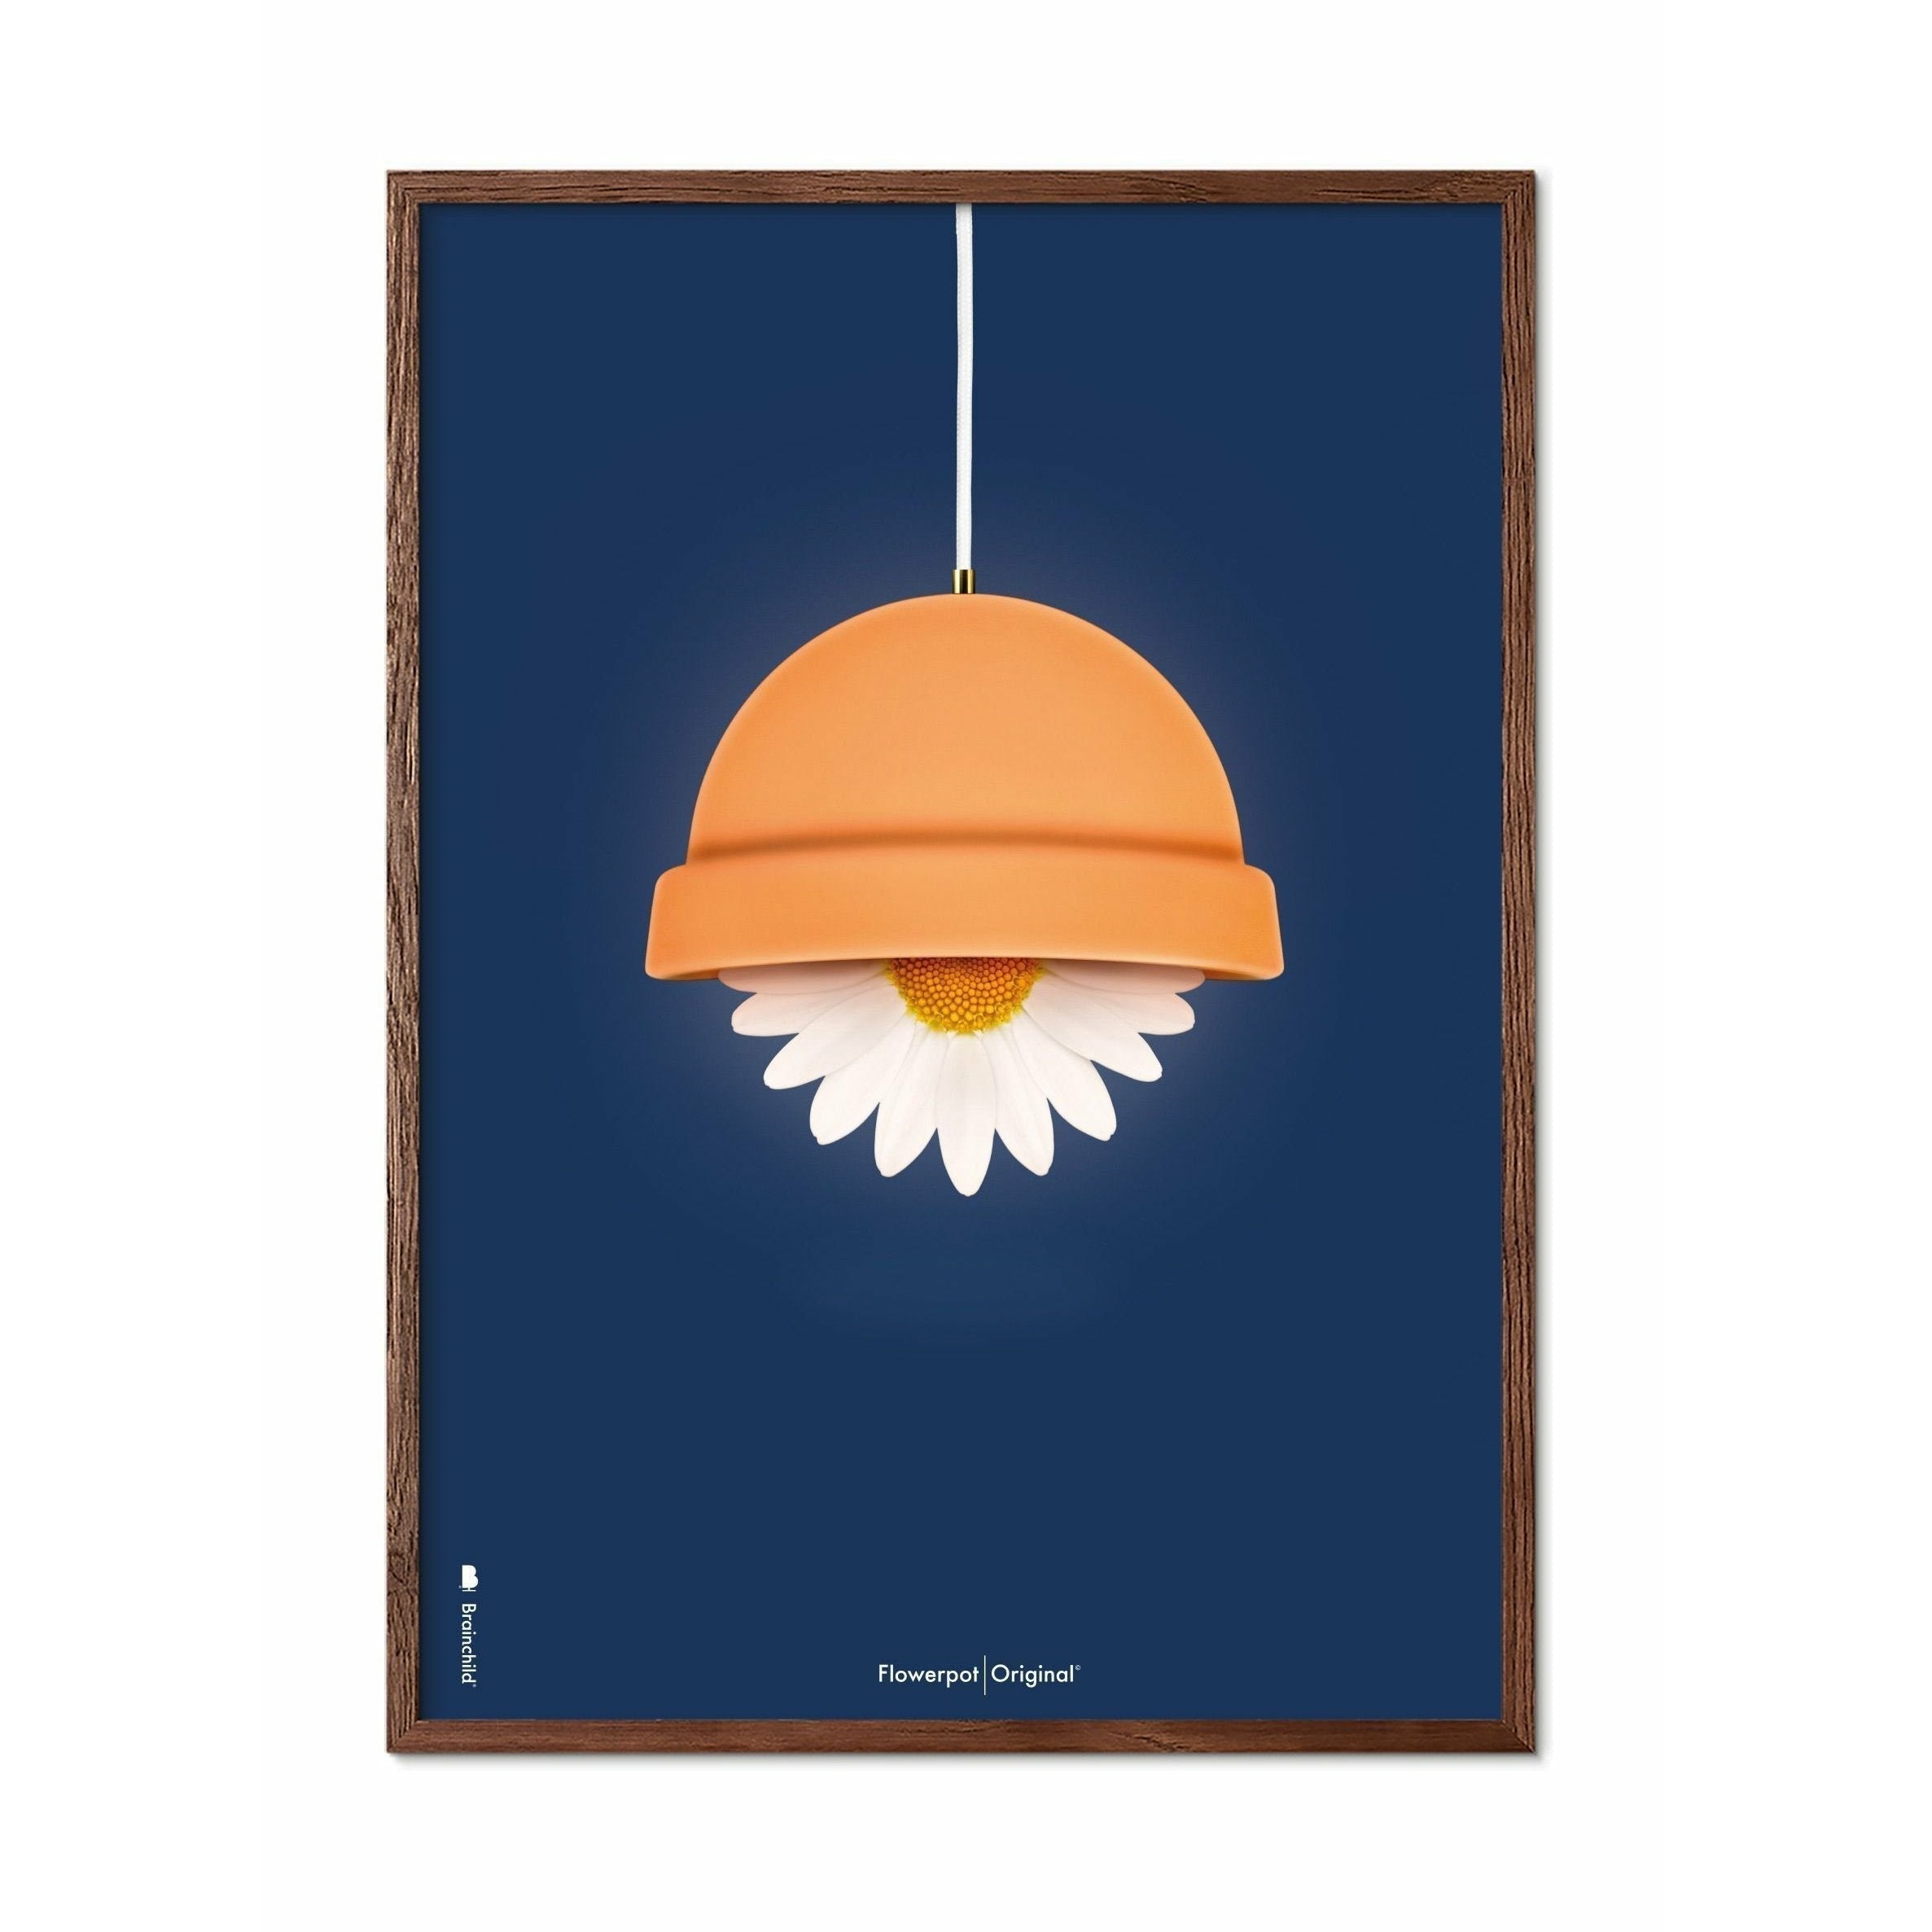 Brainchild Blumentopf Classic Poster, dunkler Holzrahmen 30x40 Cm, dunkelblauer Hintergrund